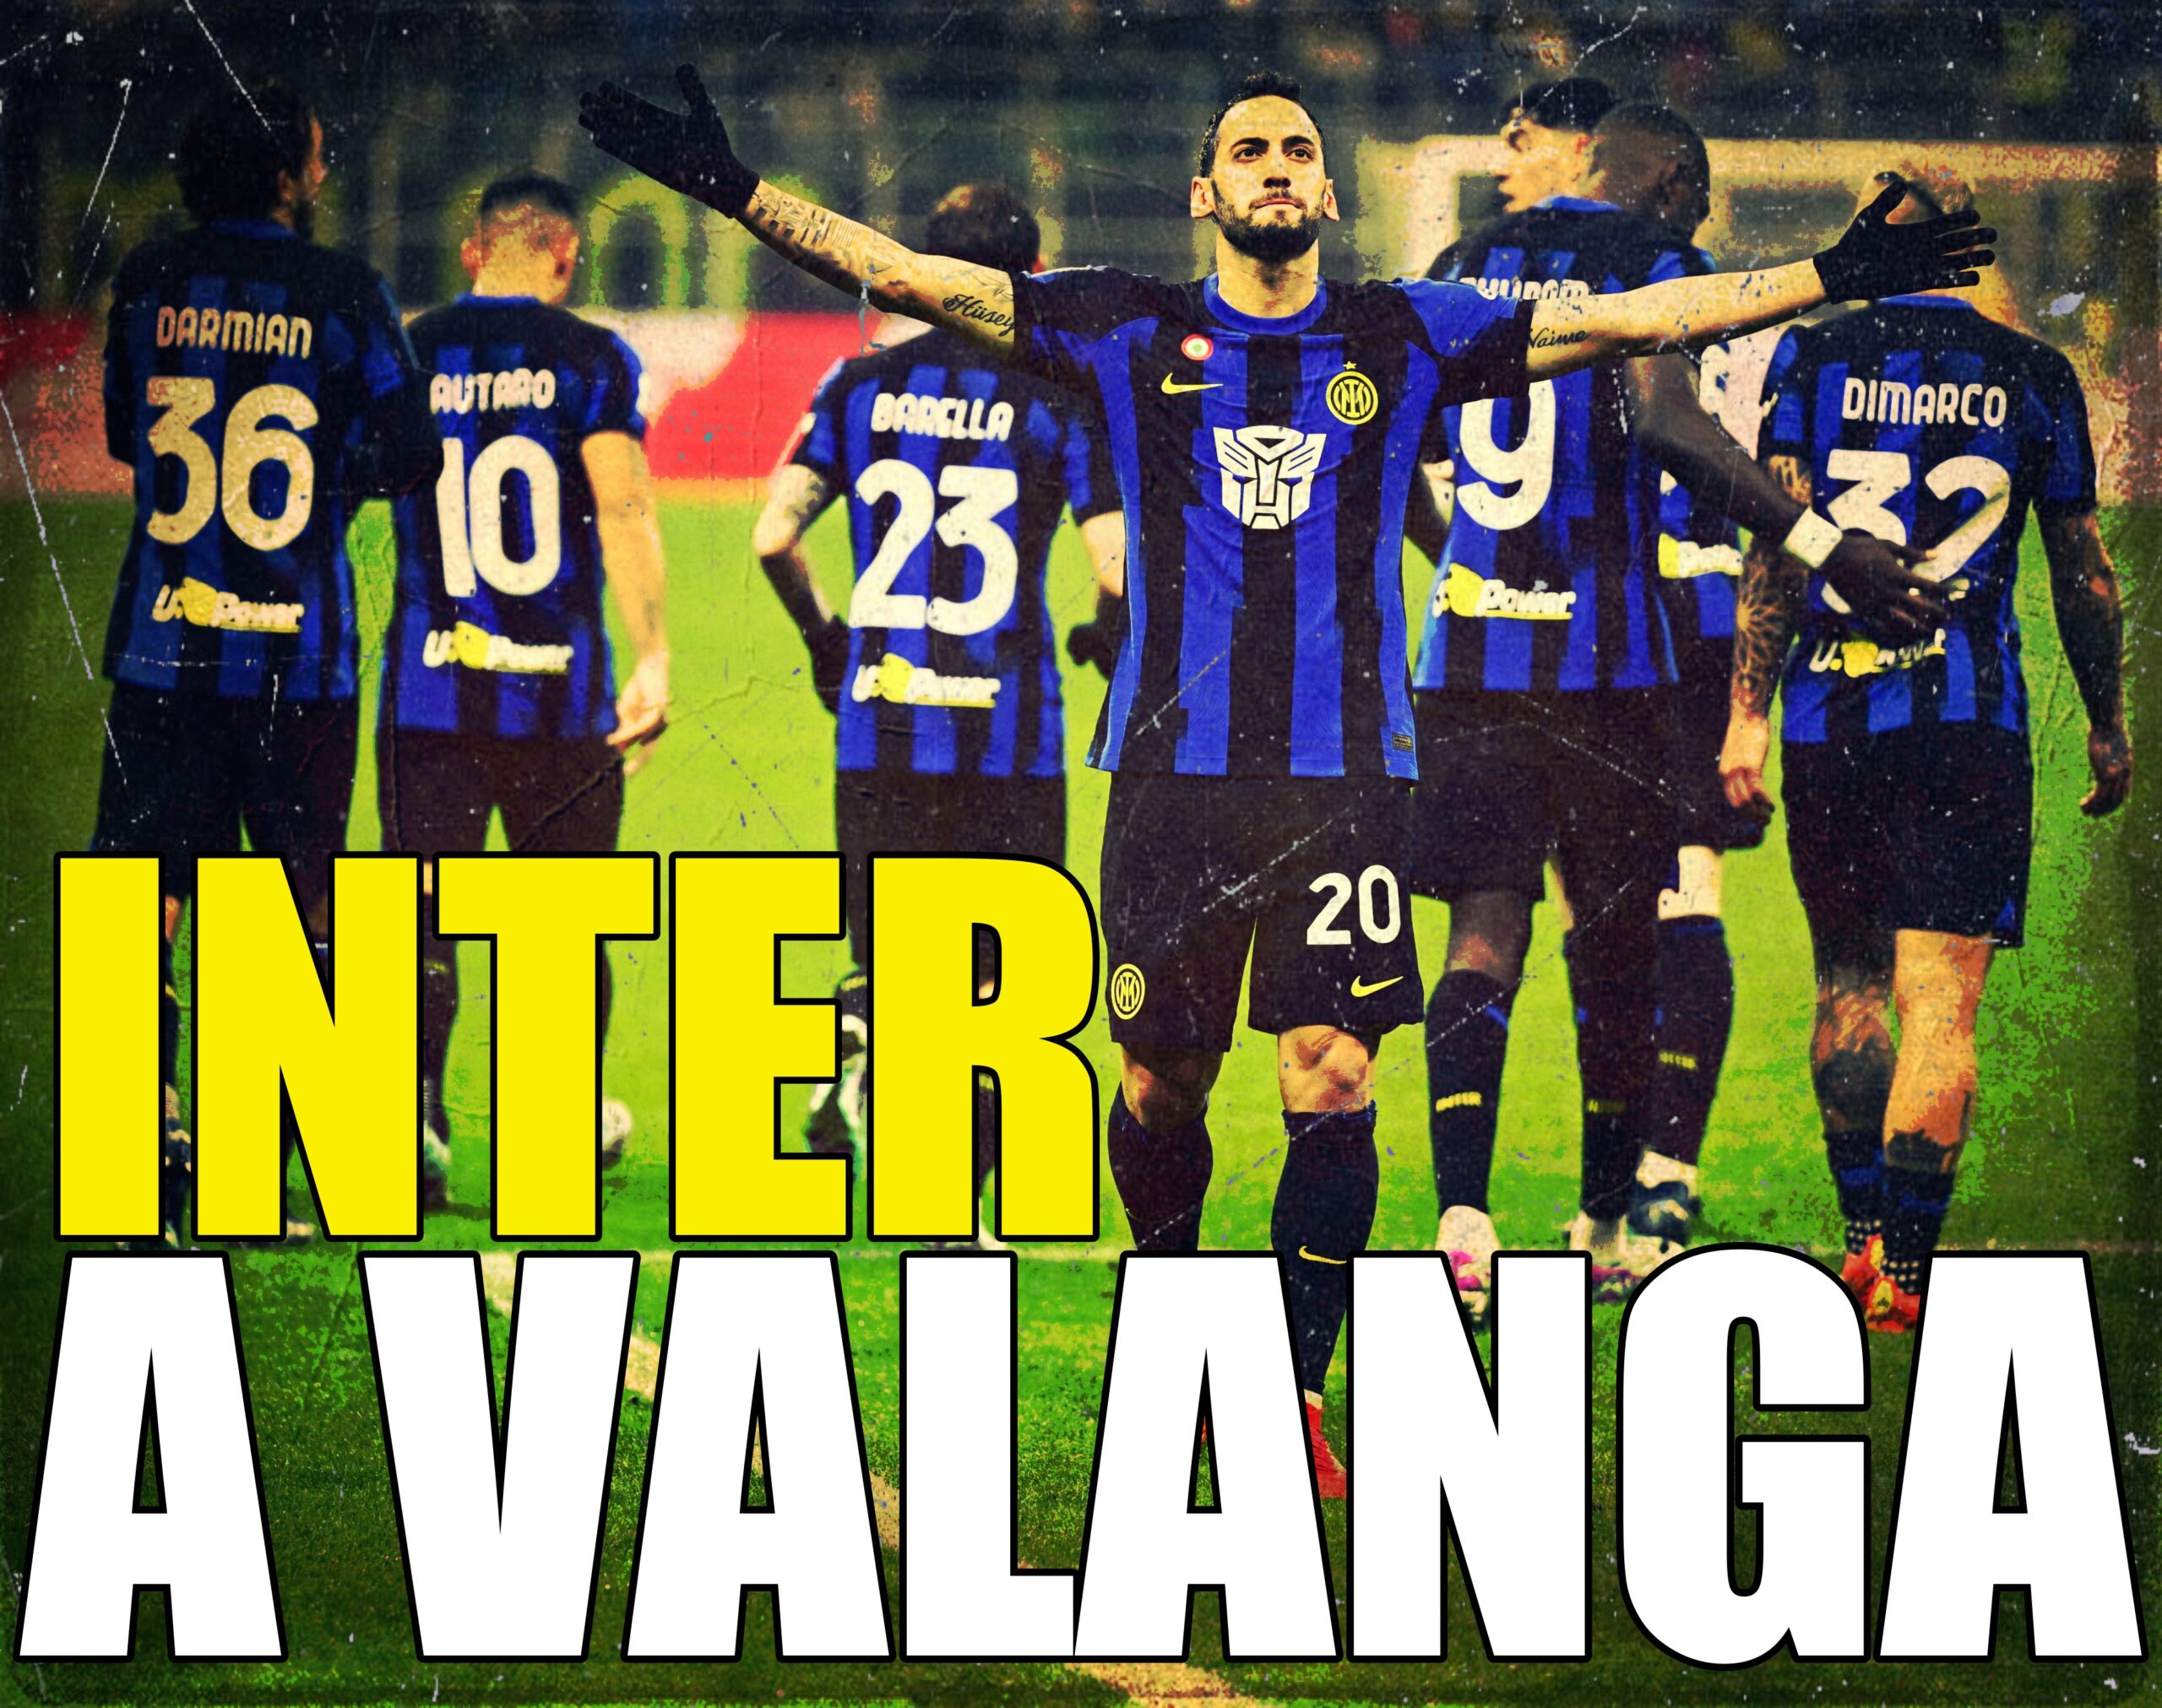 L'Inter fa 4 gol all'Udinese: Çalhanoğlu, Dimarco, Thuram e Lautaro. Sola  in testa con 2 punti sulla Juve. Nerazzurri super in difesa e a valanga in  attacco: tutto il contrario della Juve… 